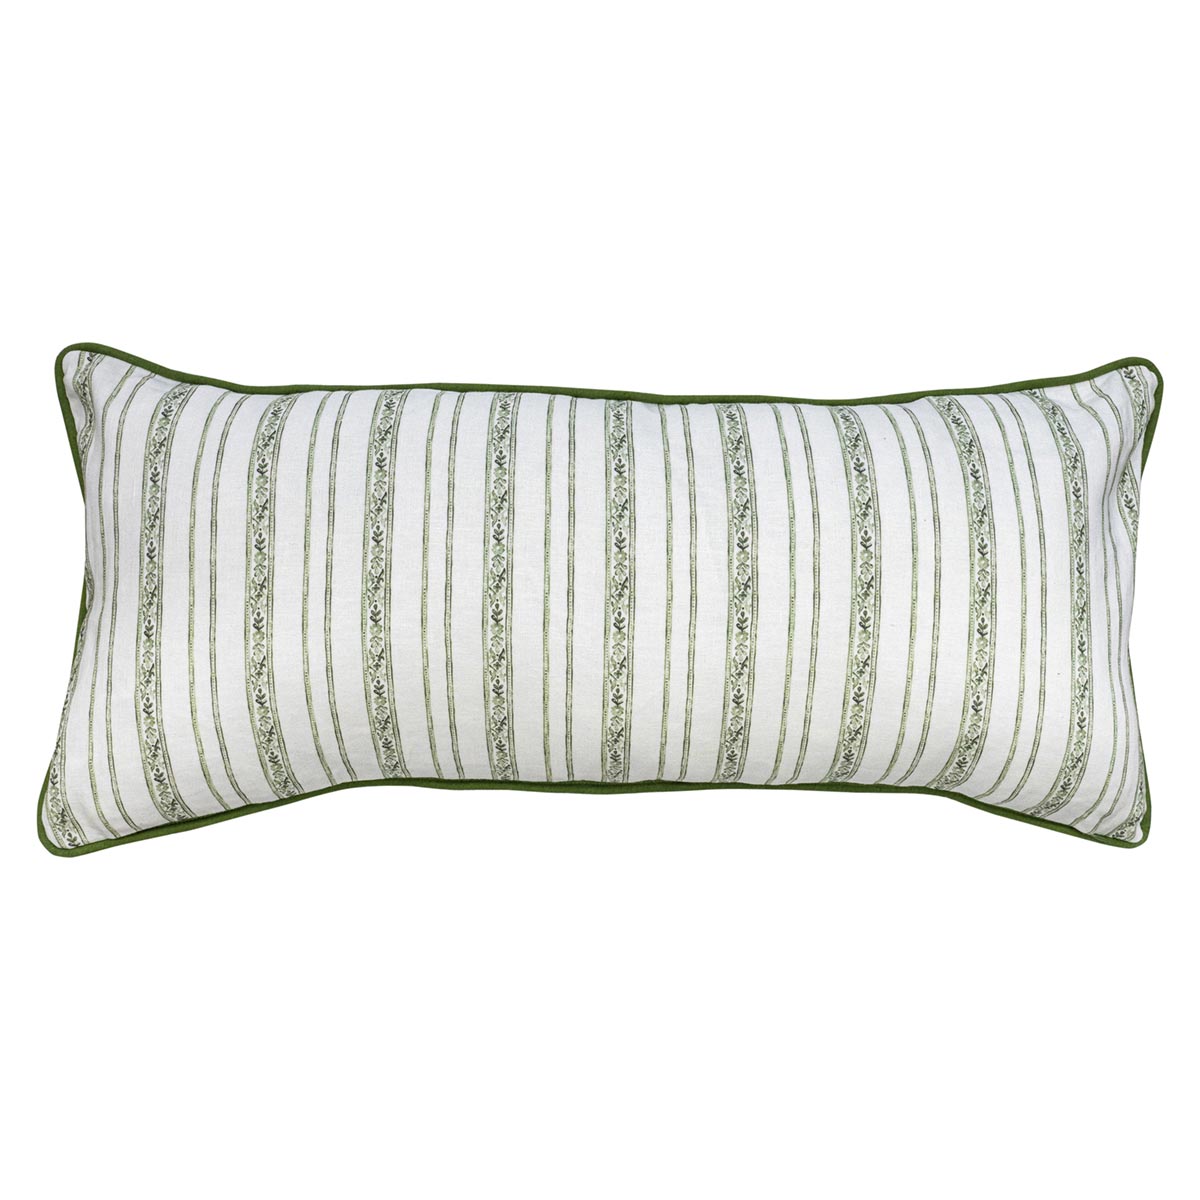 Seville Green 11" x 27" Pillow